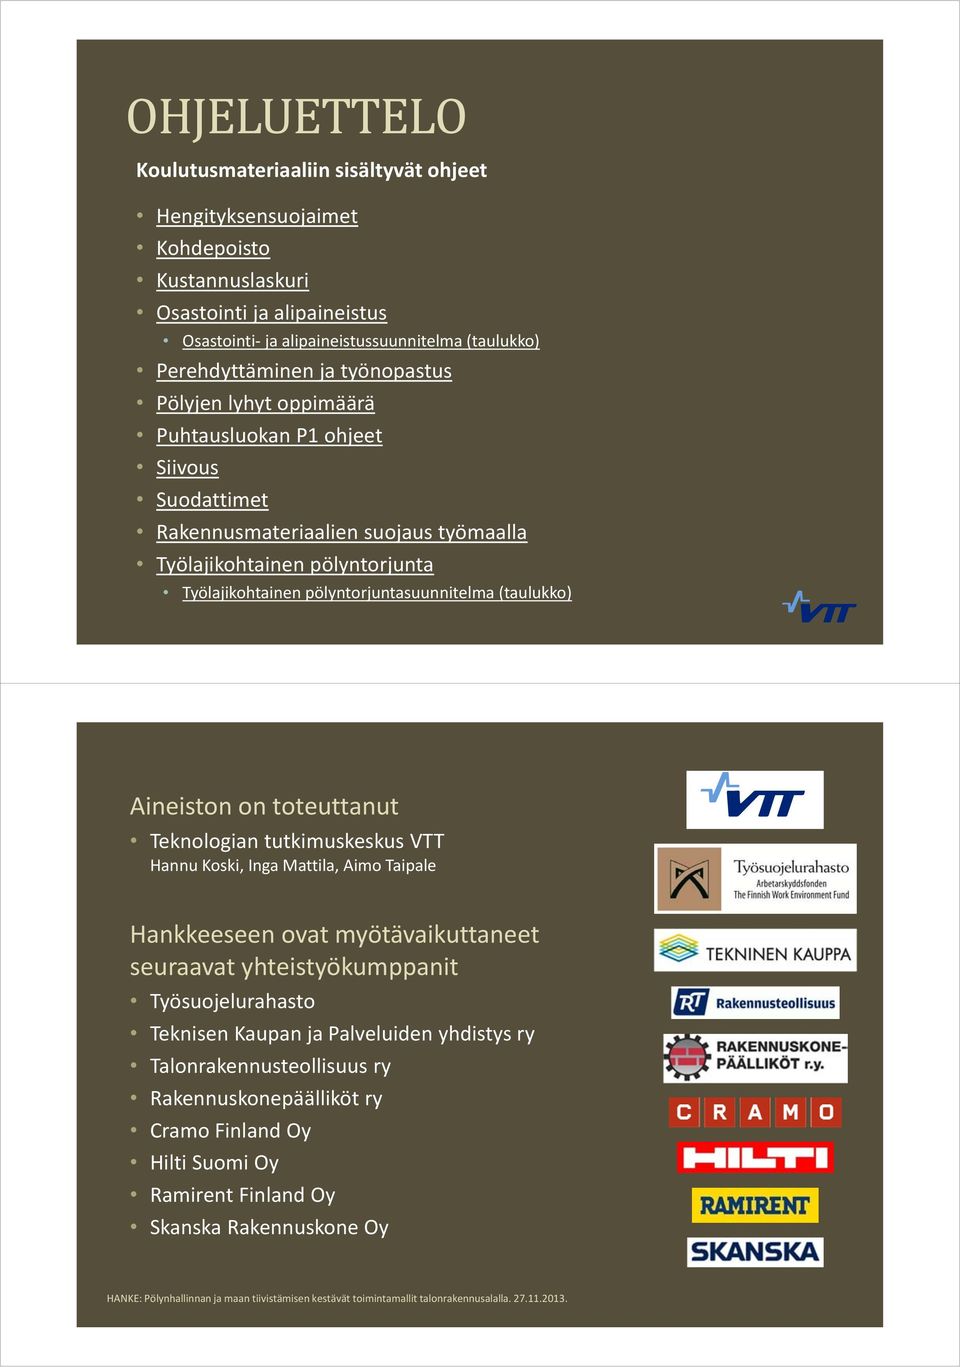 (taulukko) Aineiston on toteuttanut Teknologian tutkimuskeskus VTT Hannu Koski, Inga Mattila, Aimo Taipale Hankkeeseen ovat myötävaikuttaneet seuraavat yhteistyökumppanit Työsuojelurahasto Teknisen